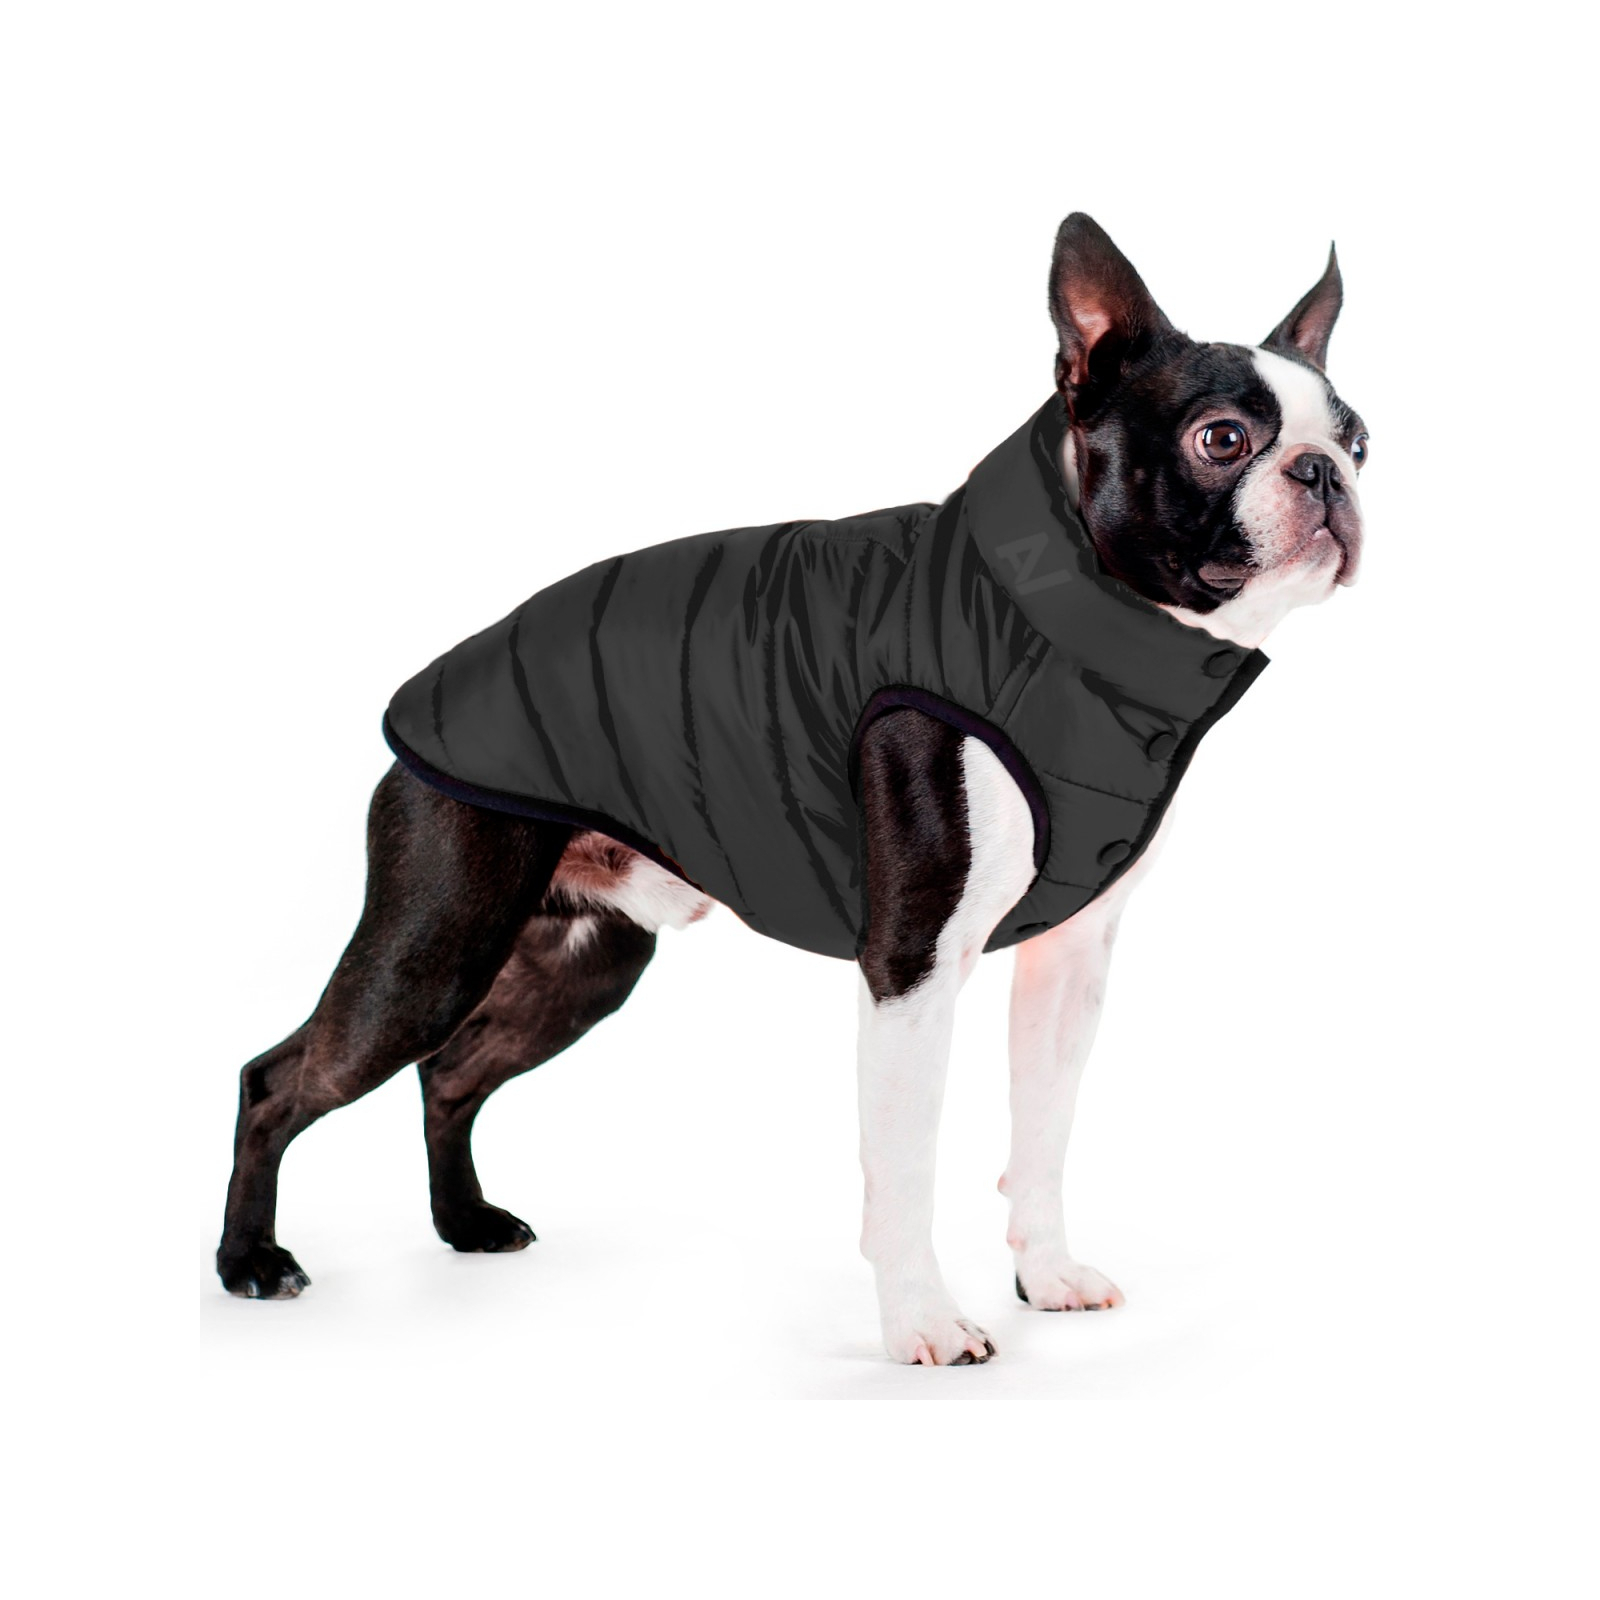 Курточка для животных Airy Vest One М 40 черная (20671) изображение 3